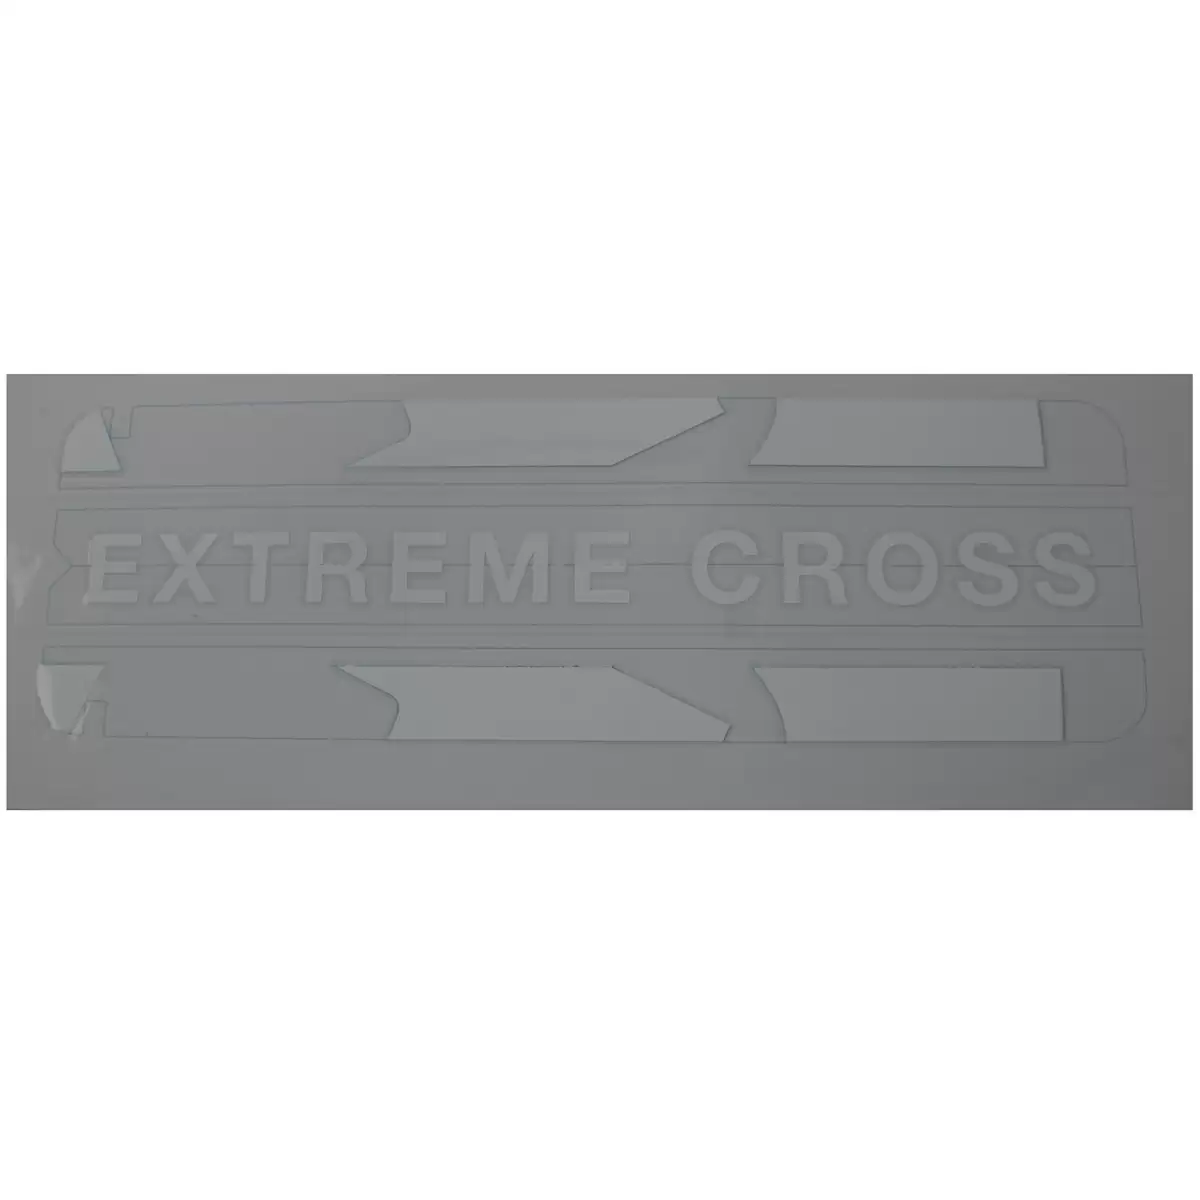 Adesivo da tampa da bateria Extreme Cross branco - image